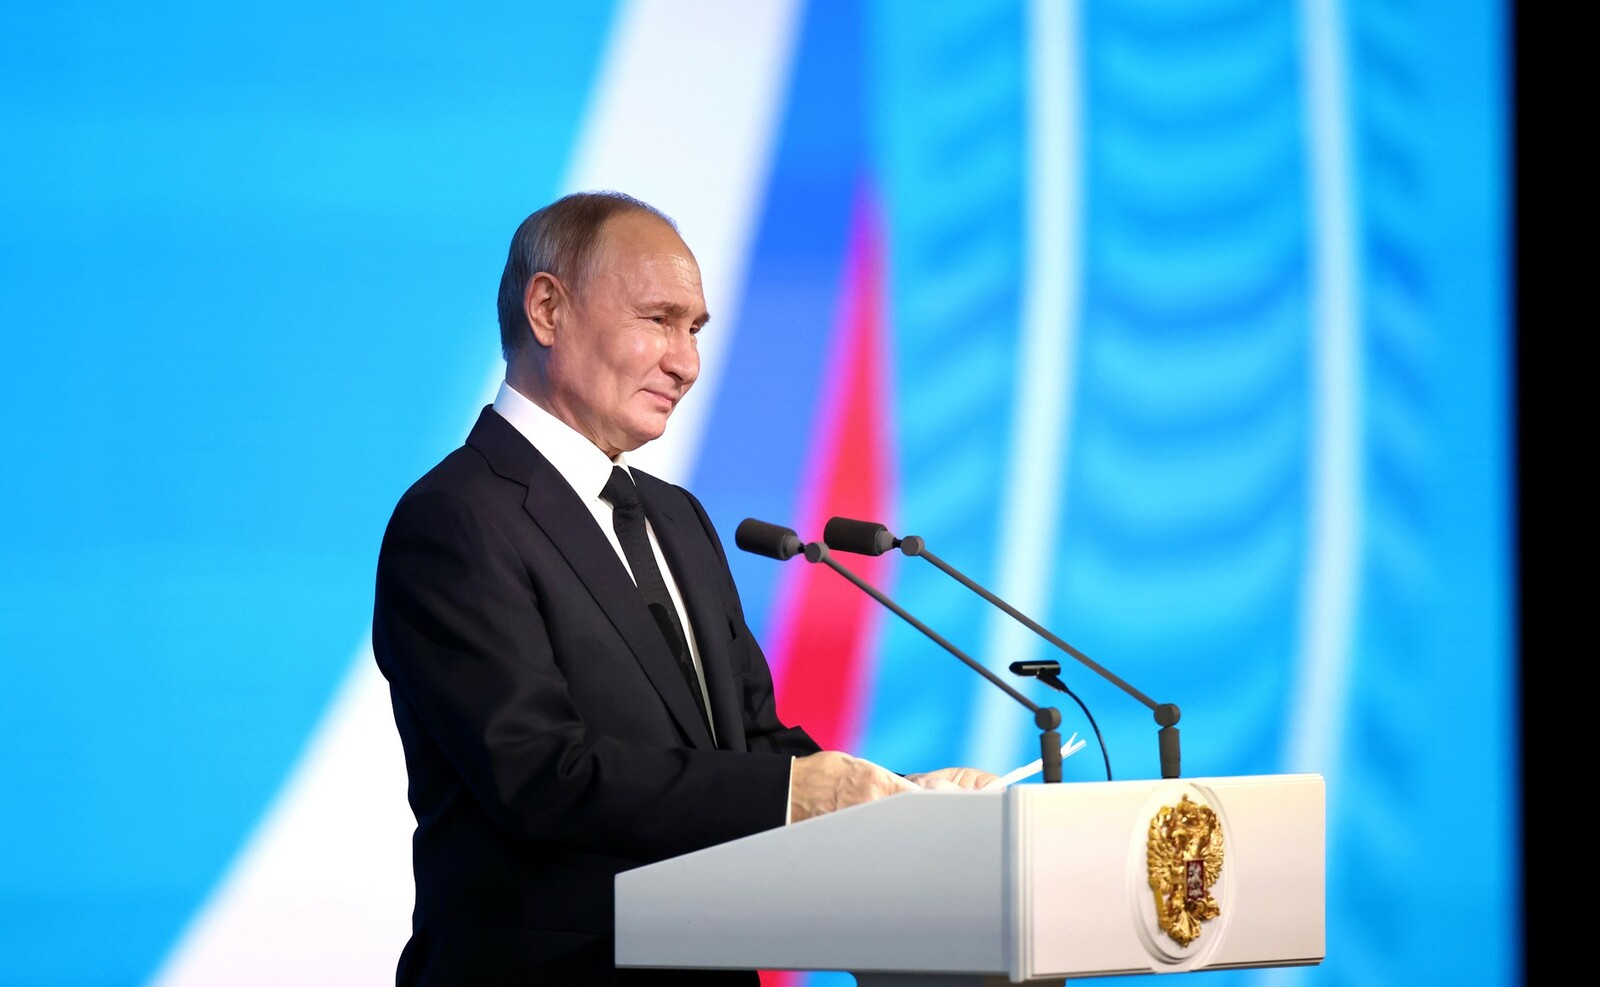 БАМ стал транспортным коридором глобального значения, заявил Путин